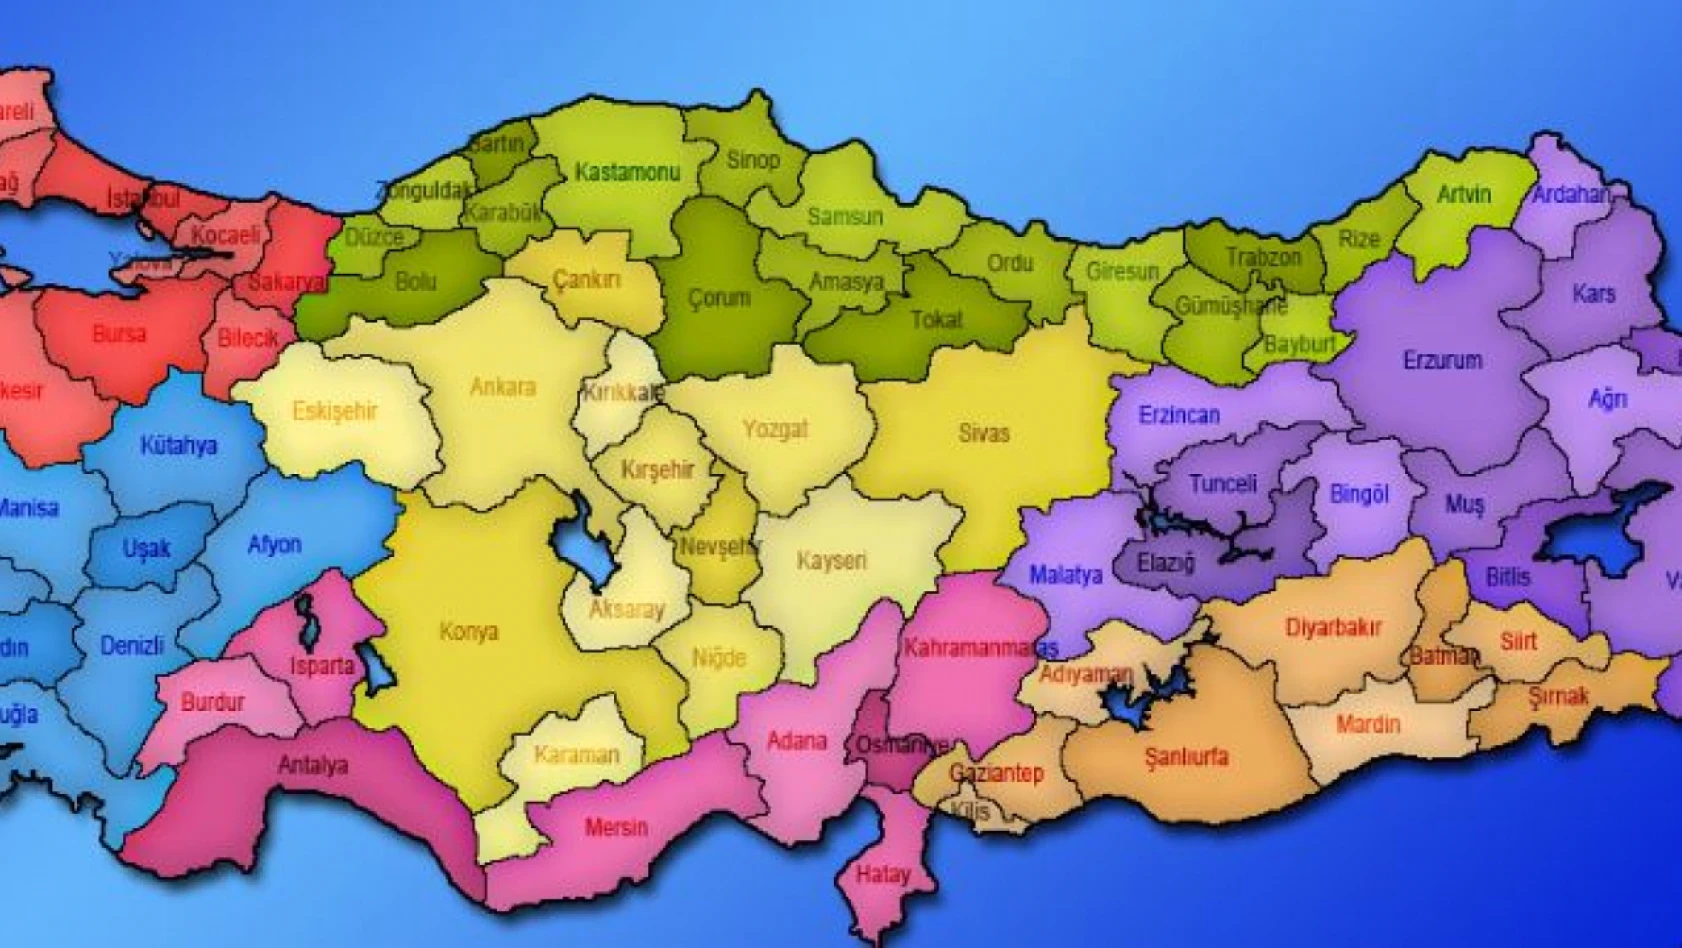 Kayseri, Adana, Ankara, İzmir, Antalya, Trabzon, Erzurum, Diyarbakır, İstanbul dikkat – Resmi açıklama geldi!